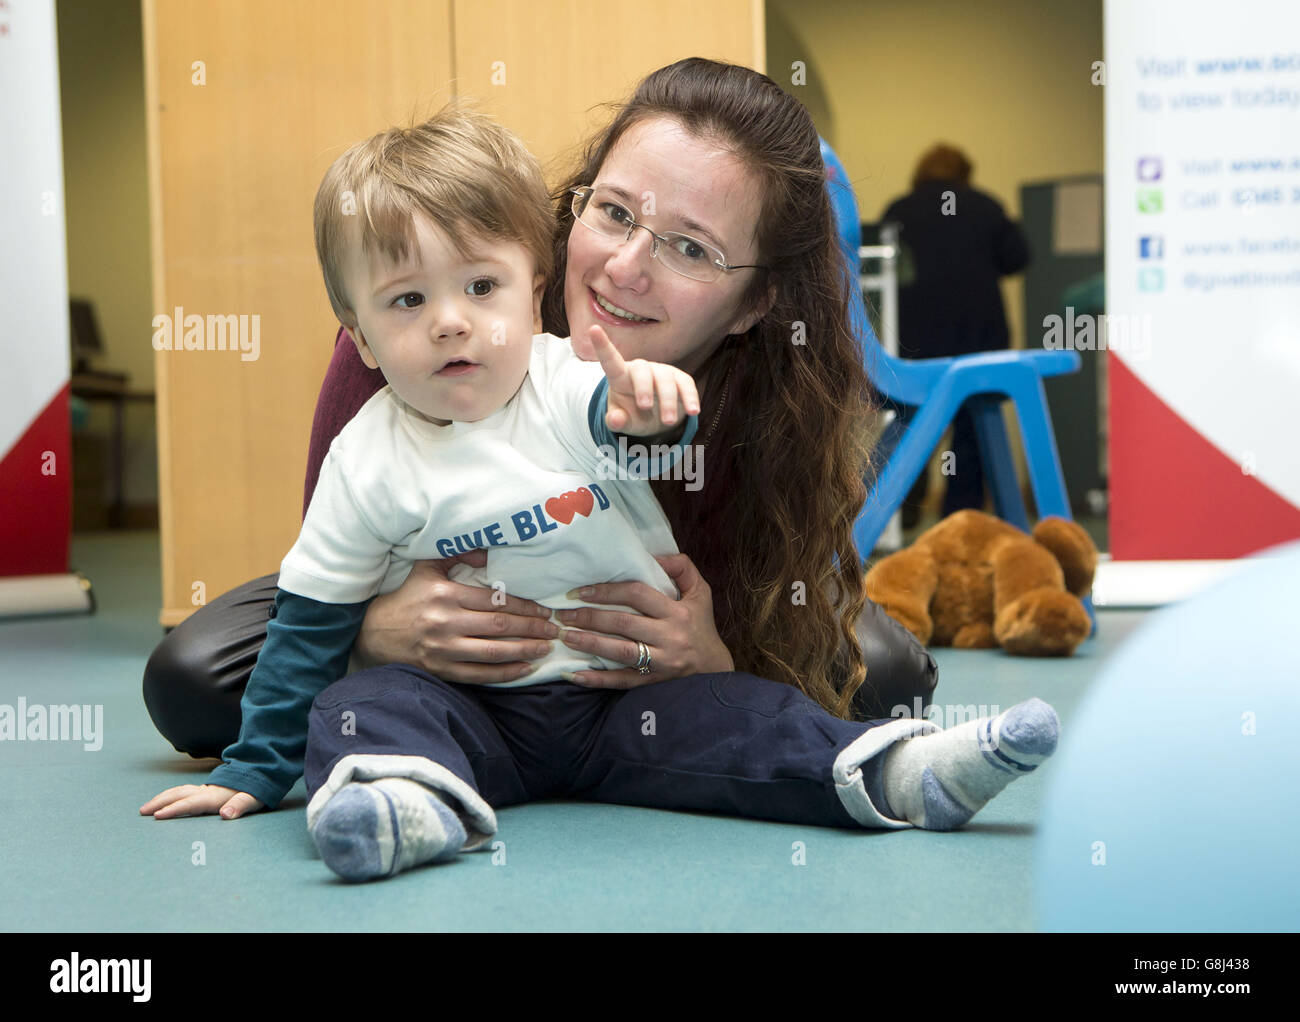 Sian Waugh und ihr 18 Monate alter Sohn Conan Waugh, dessen Leben durch eine Bluttransfusion gerettet wurde, als sie Menschen ermutigten, während einer Fotoanprobe im Glasgow Donor Center Blut zu spenden, ihre neue Jahresauflösung zu machen. Stockfoto